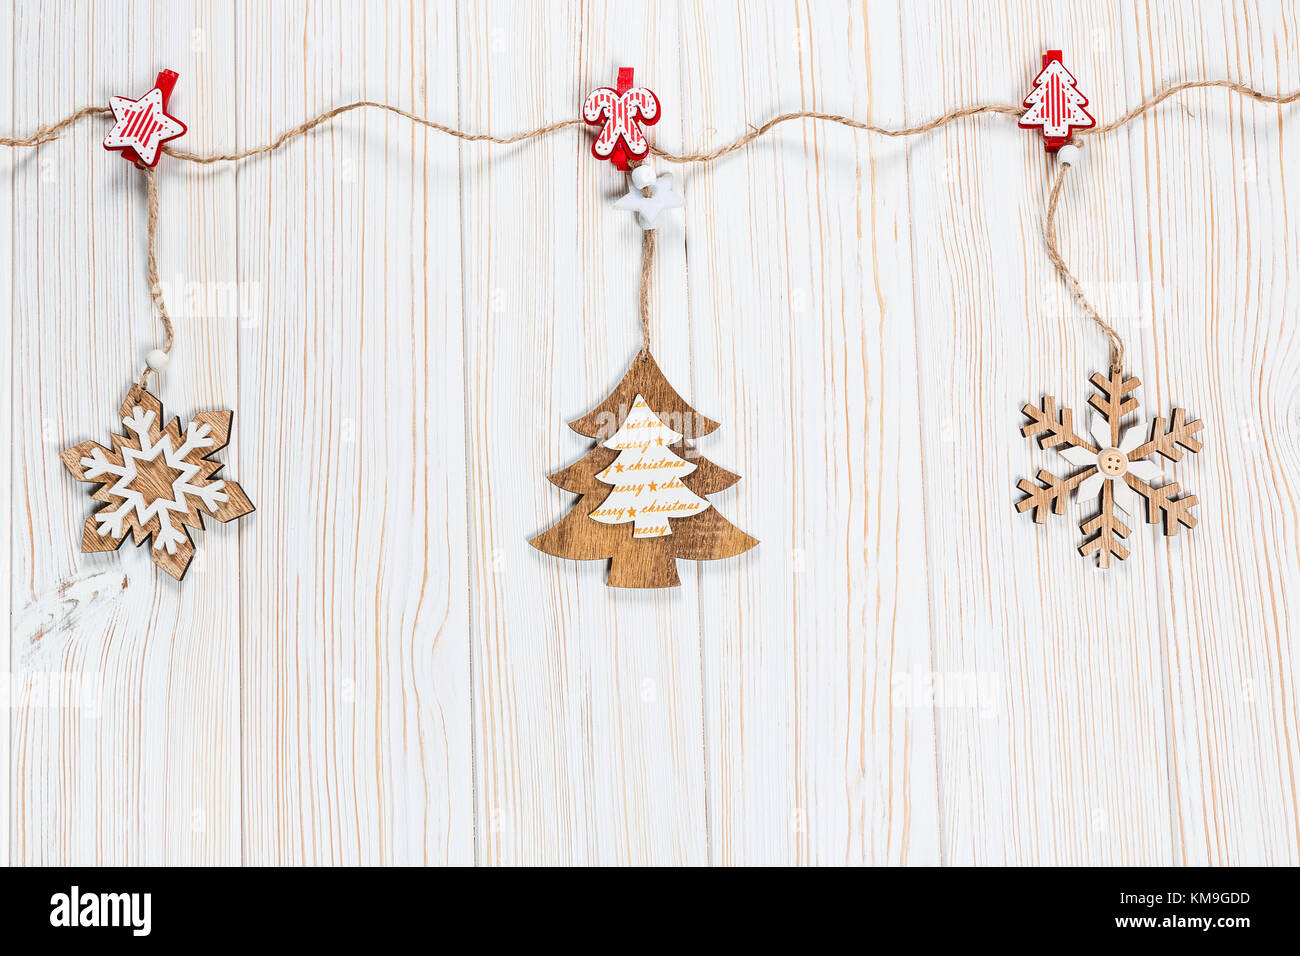 Il natale dei giocattoli di legno nella forma di un albero di natale e i fiocchi di neve pesare su una fune su un bianco sullo sfondo di legno. bellissimo messaggio di saluto festivo card wit Foto Stock